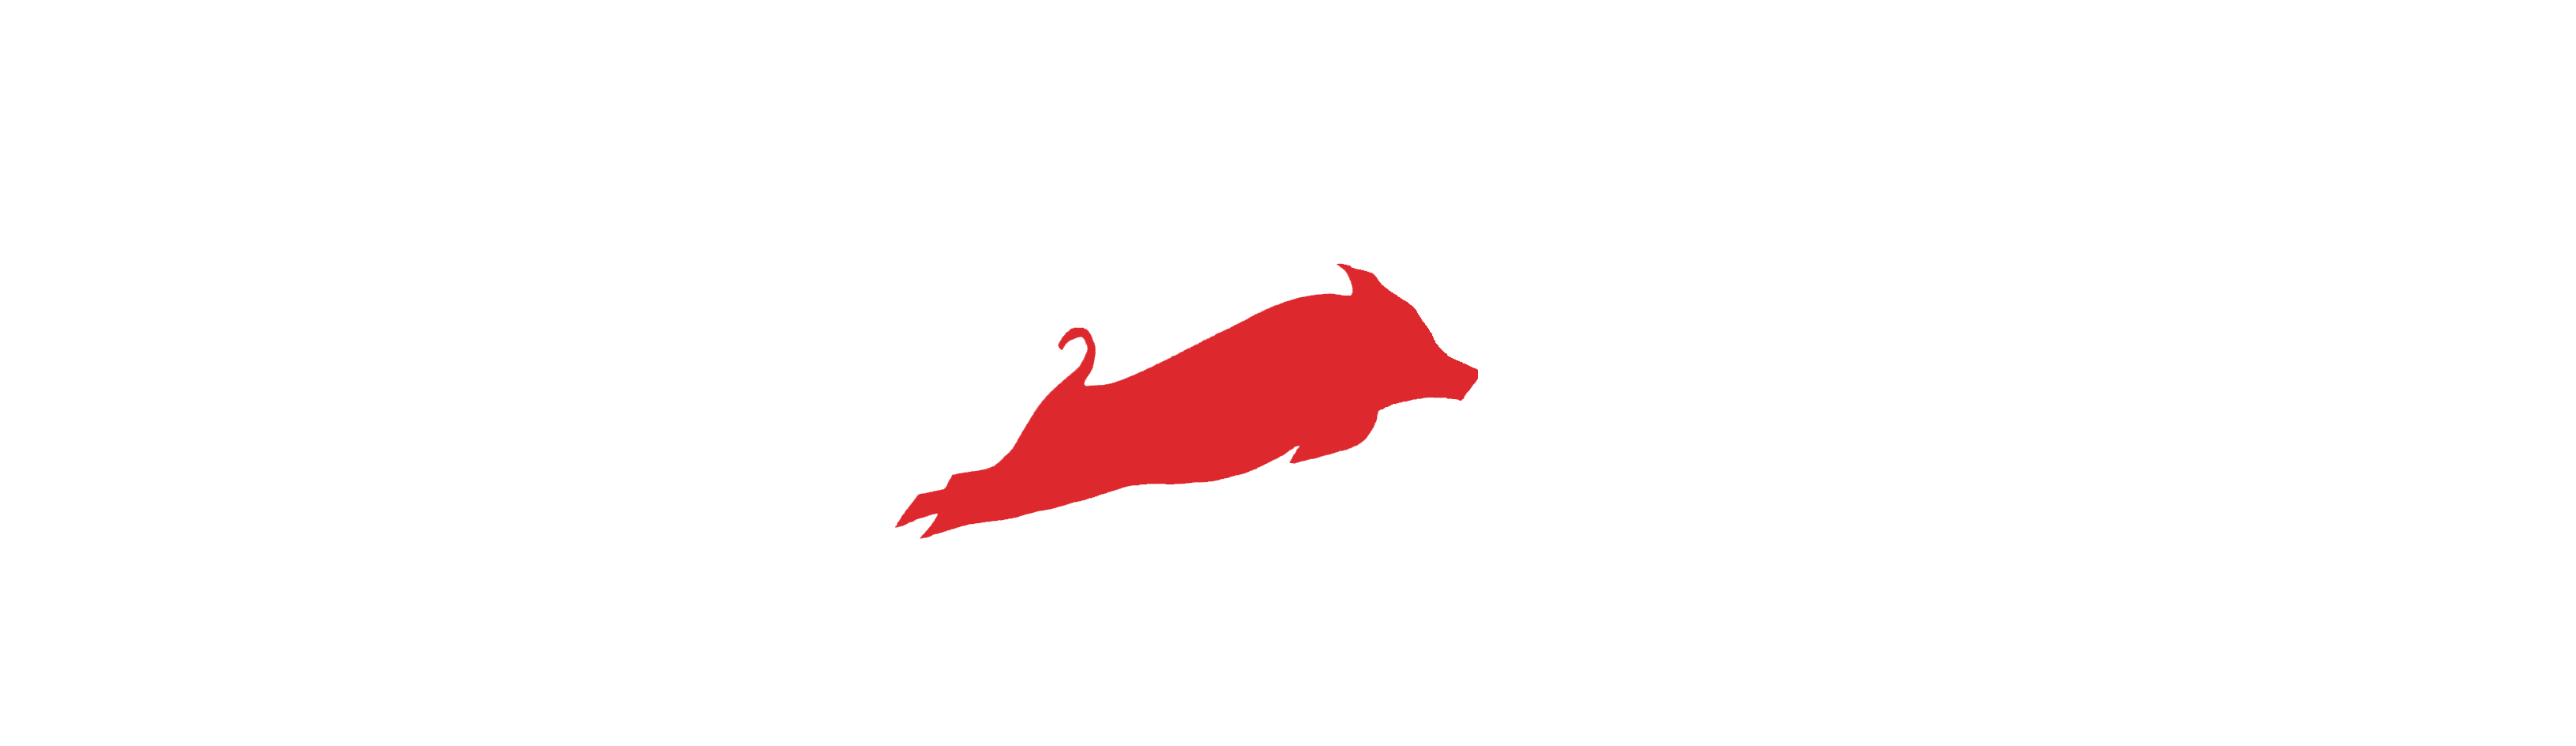 Hog Farm logo